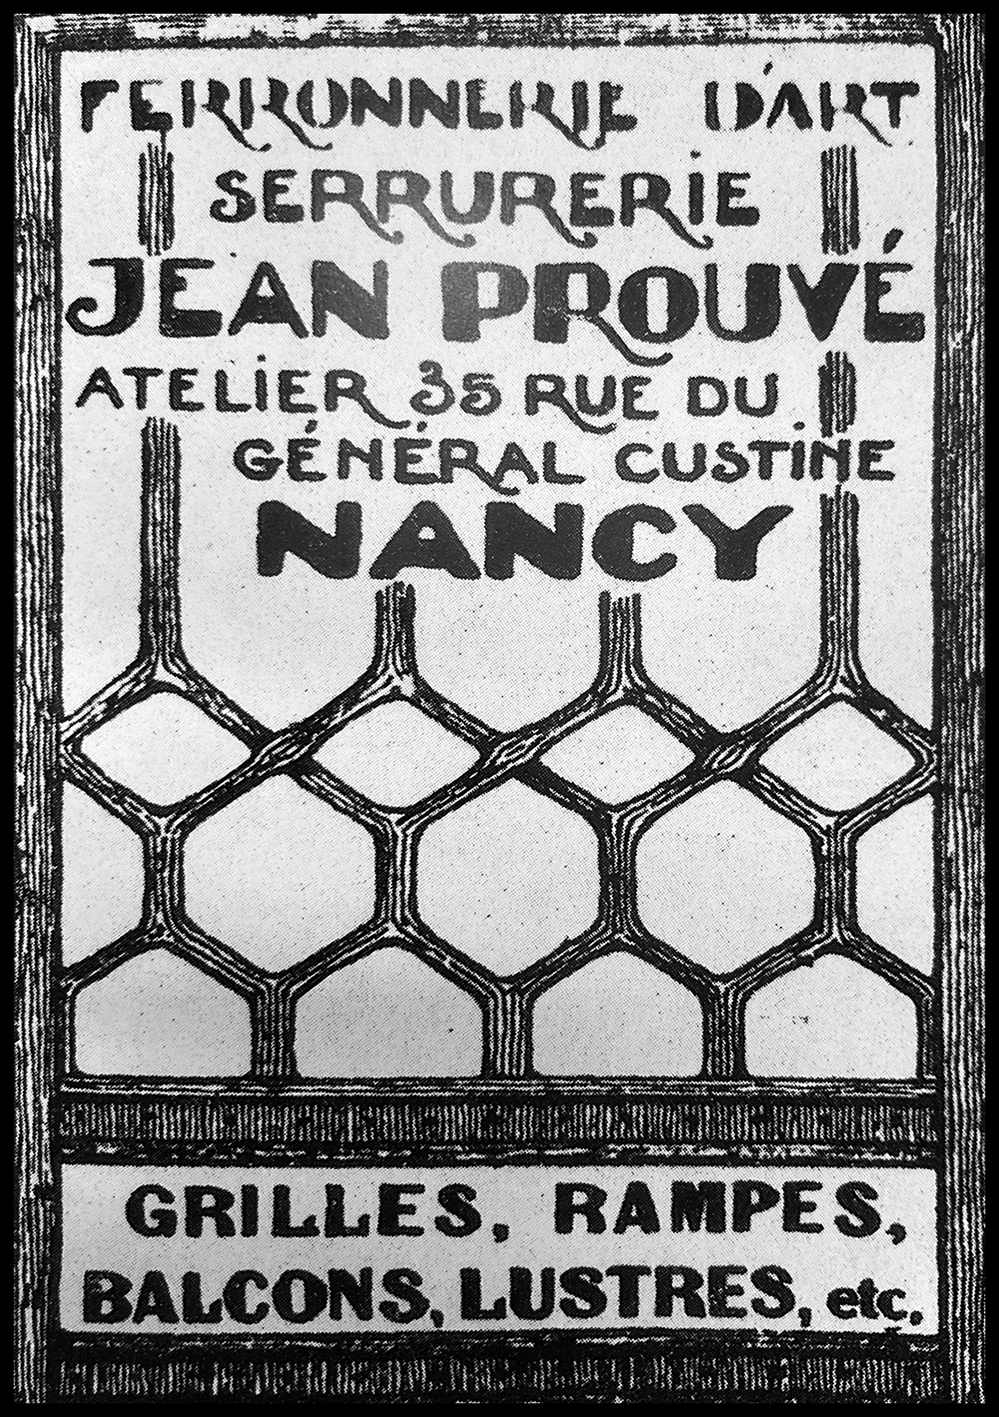 Atelier de ferronnerie Jean Prouvé, document publicitaire par A. Legrand, c. 1924.